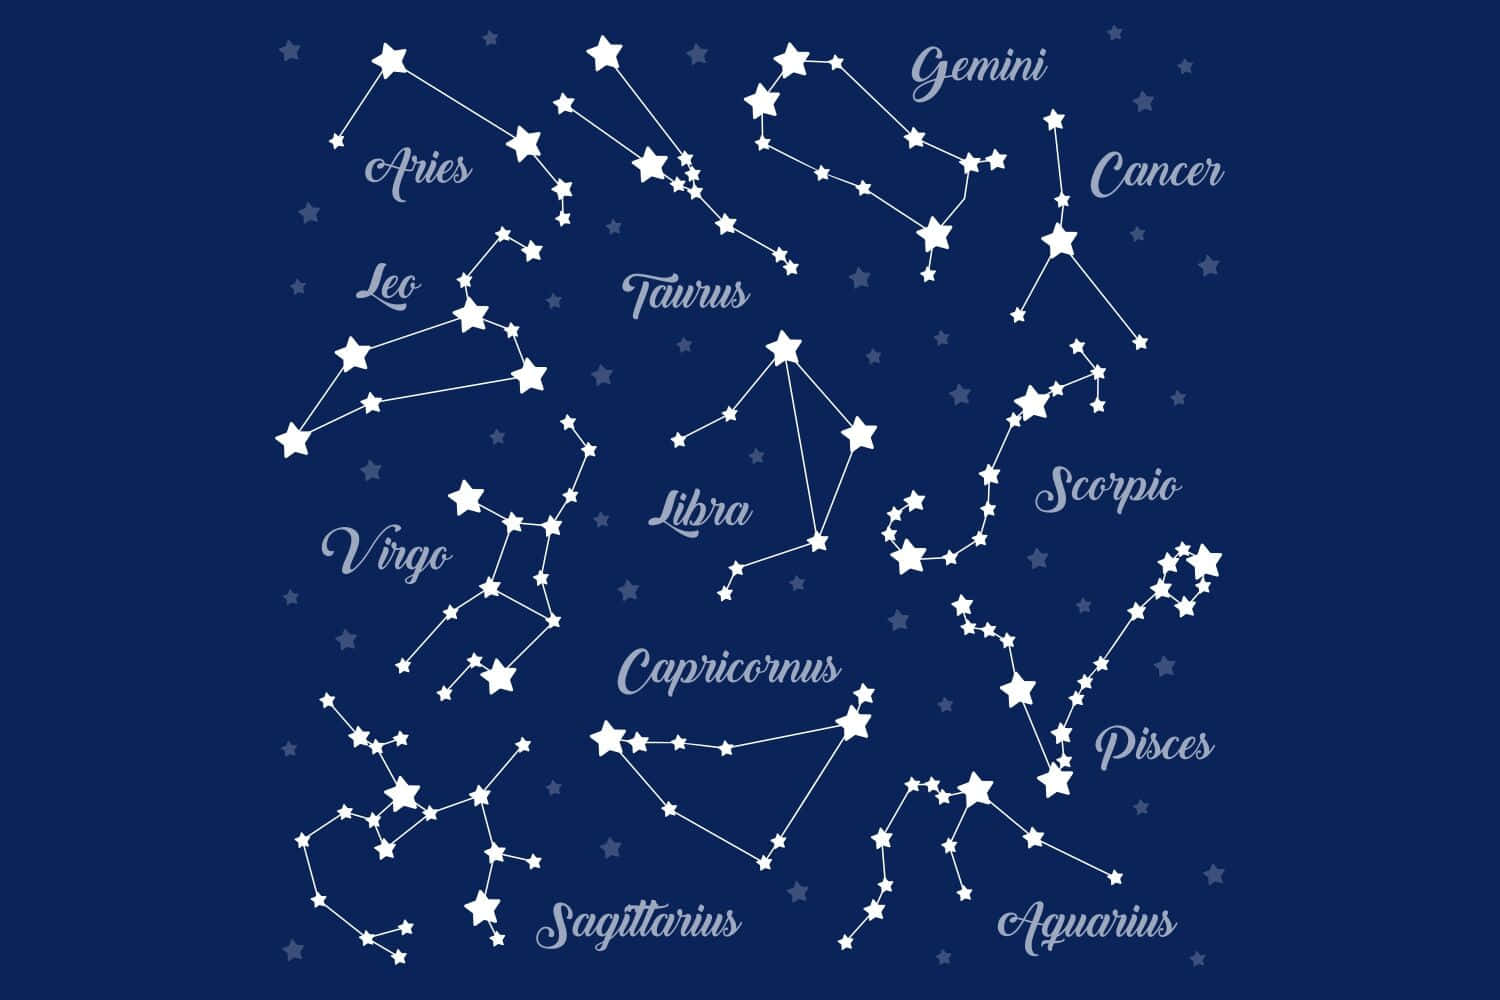 Signosdo Zodíaco - A Base Da Astrologia